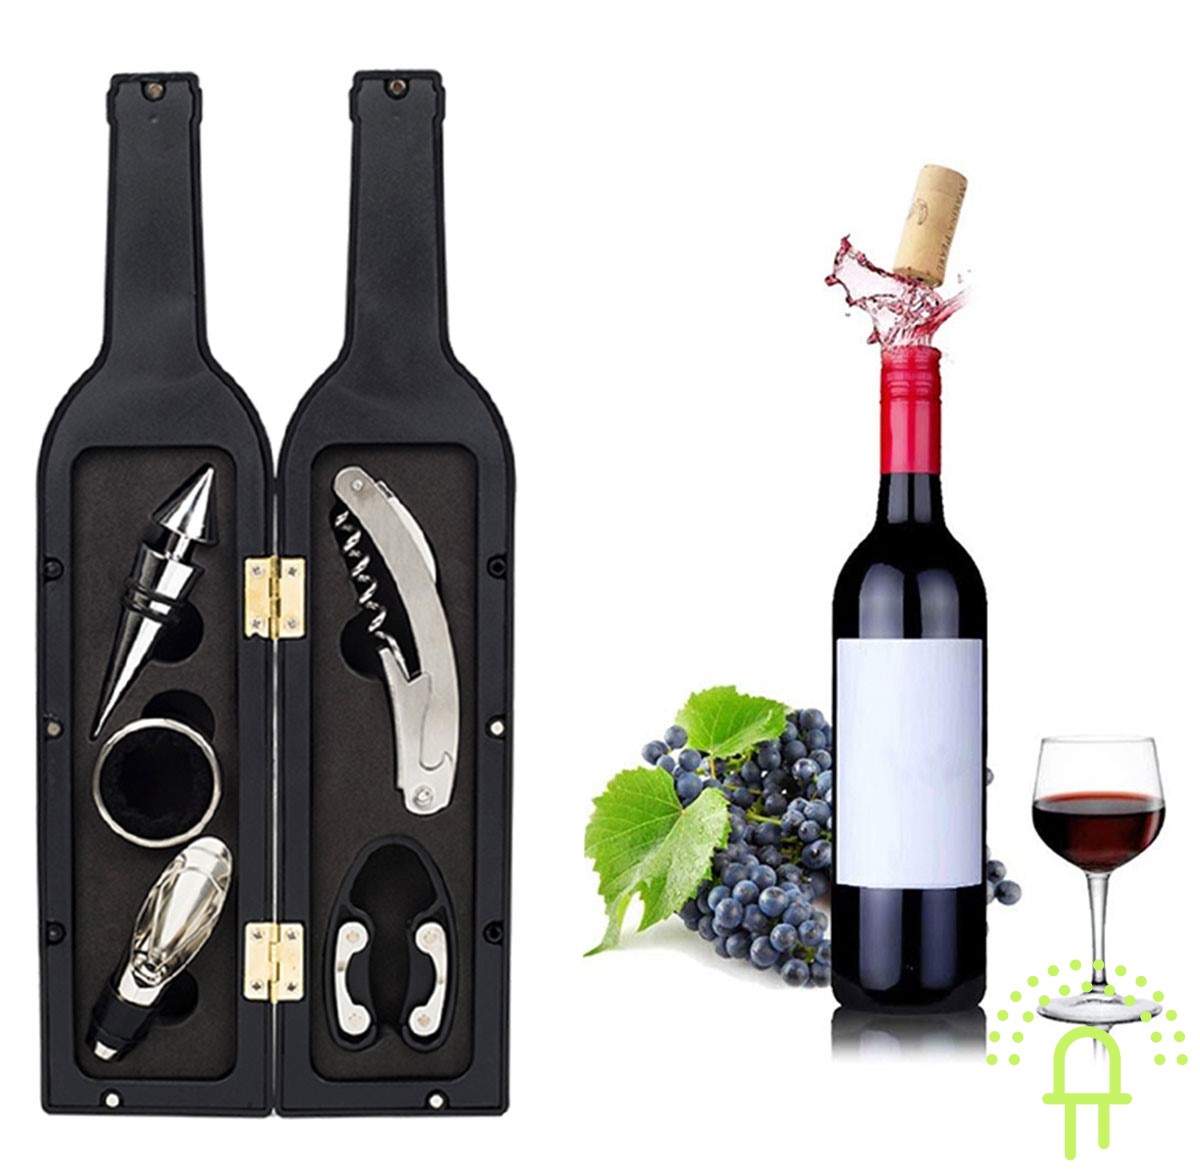 Luxe Wijn accessoire set voor de fijnproever in Luxe geschenk verpakking. Met Kelner mes, Folie snijder, Luxe Dop, Schenk Trechter, Flessenring (wijndruppelvanger),